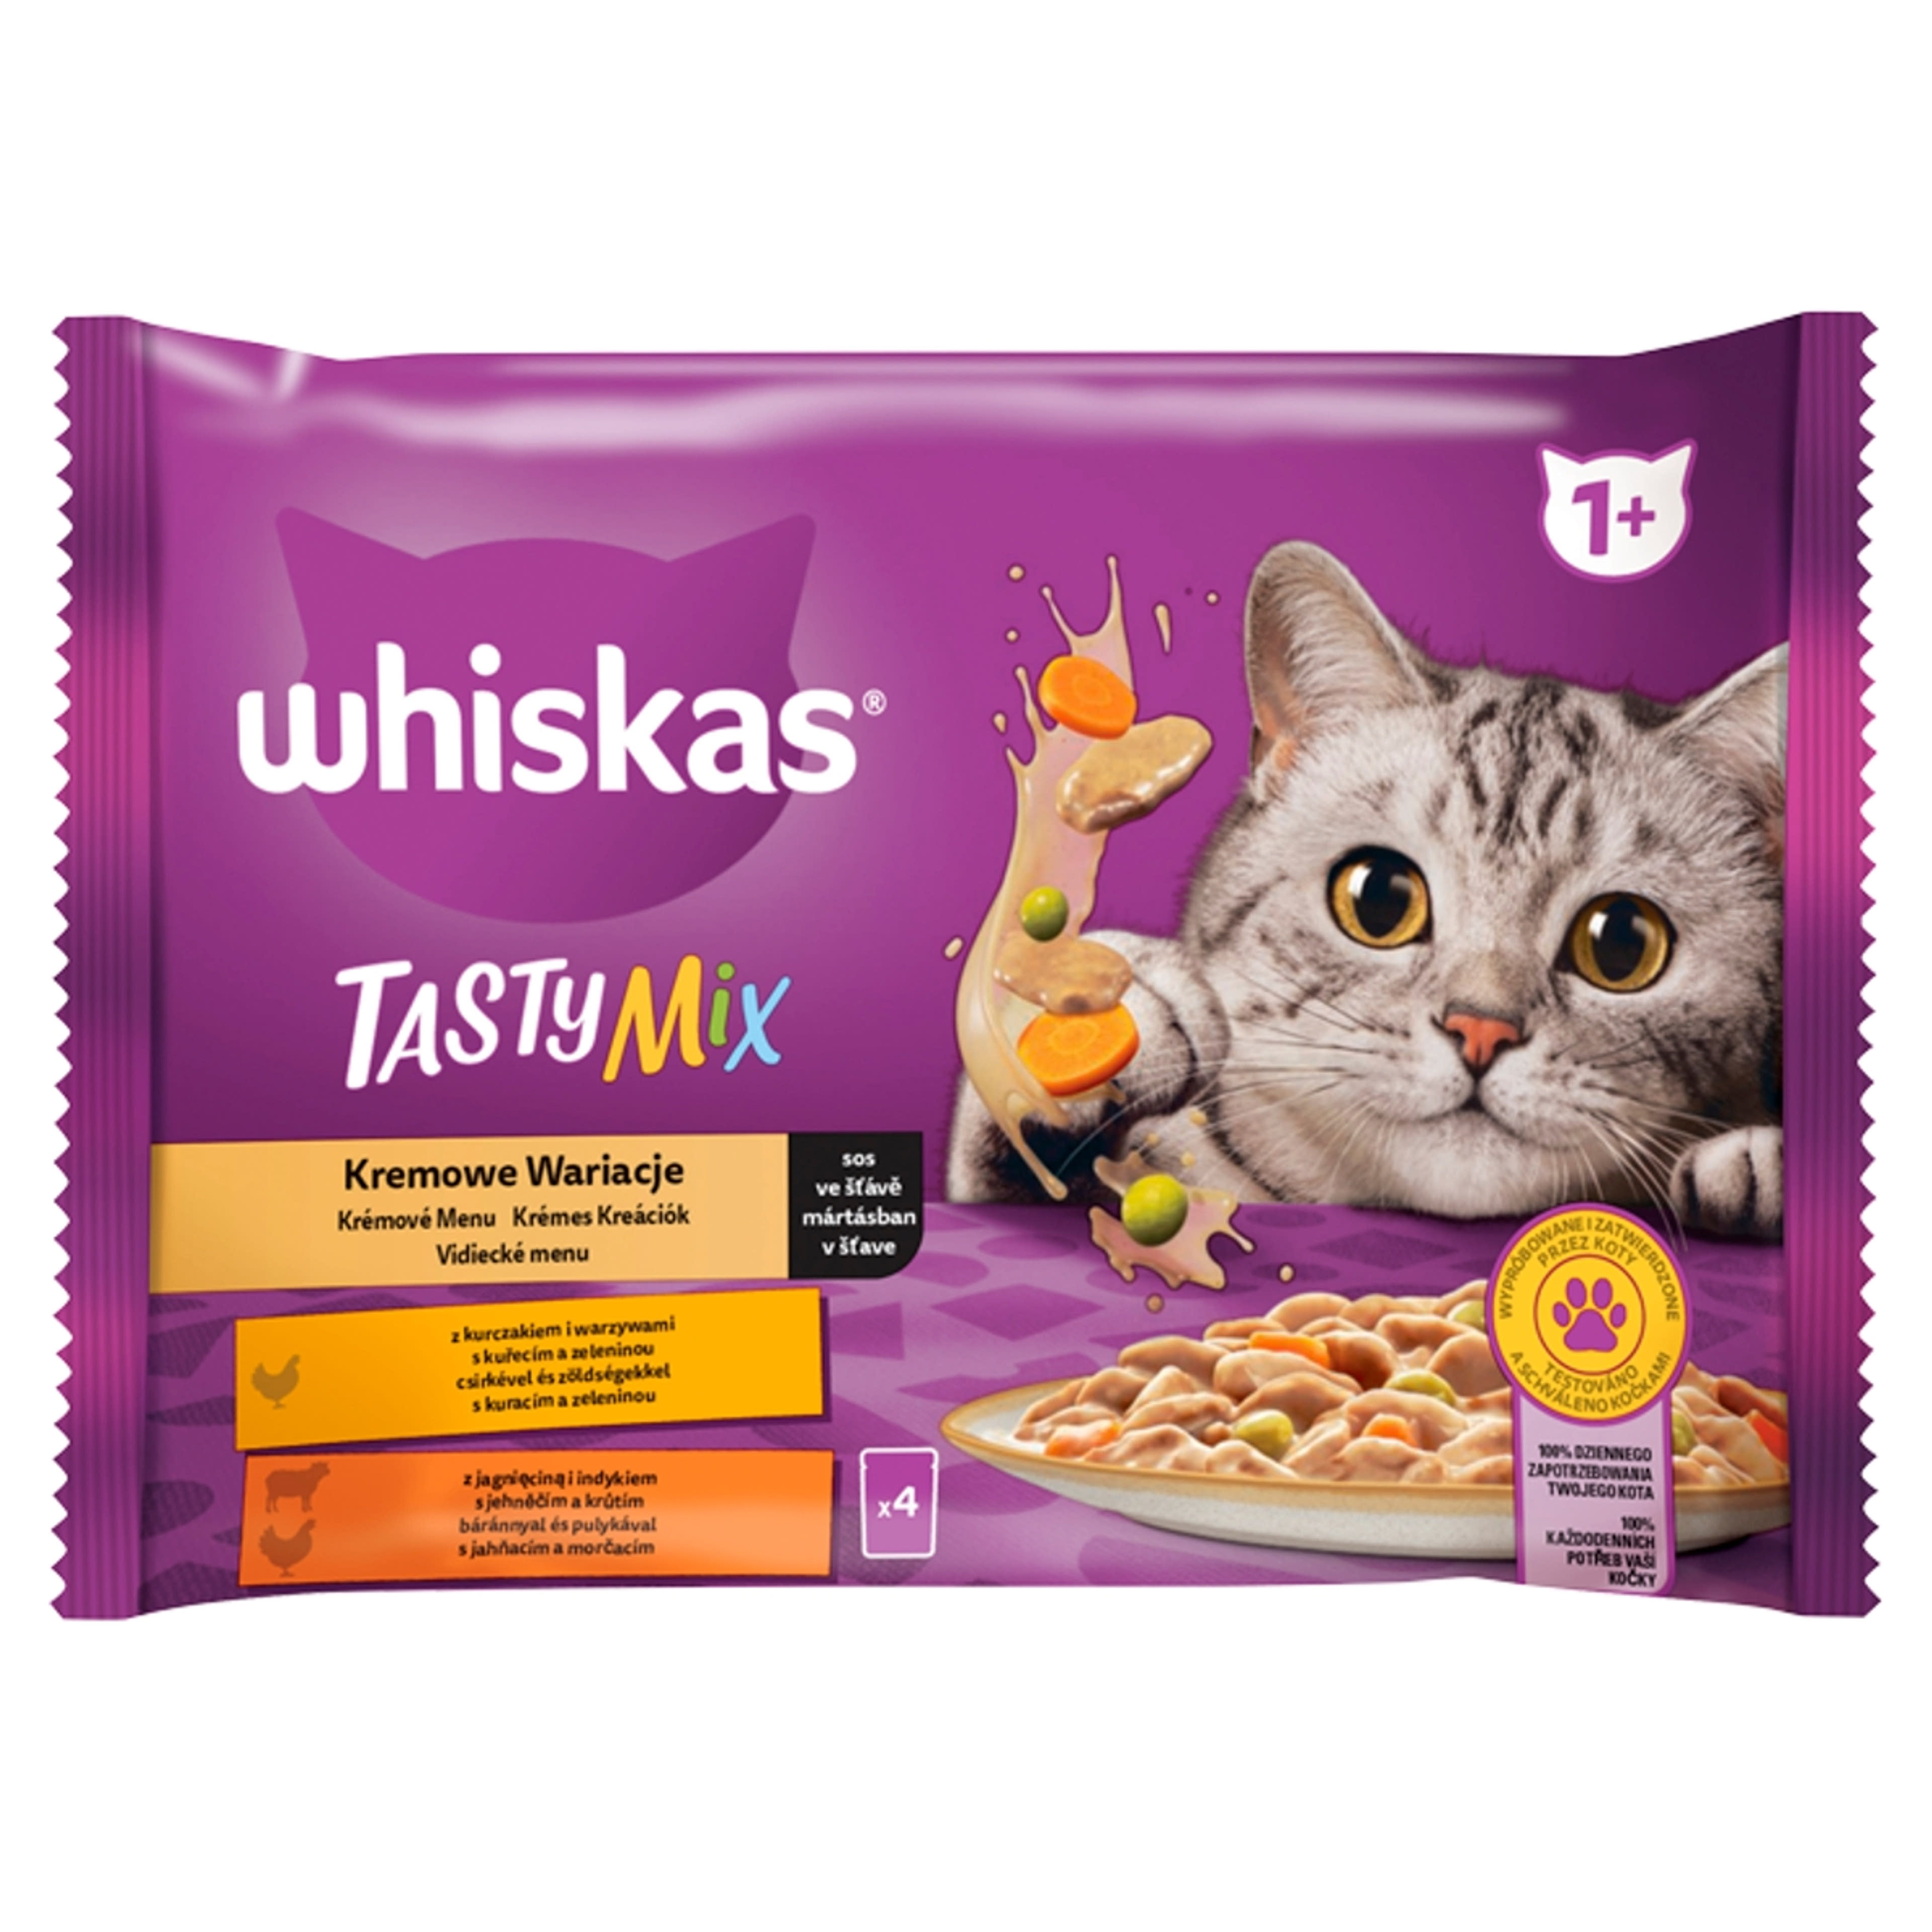 Whiskas 1+ Tasty Mix alutasak felnőtt macskáknak 4 x 85 g - 340 g-1